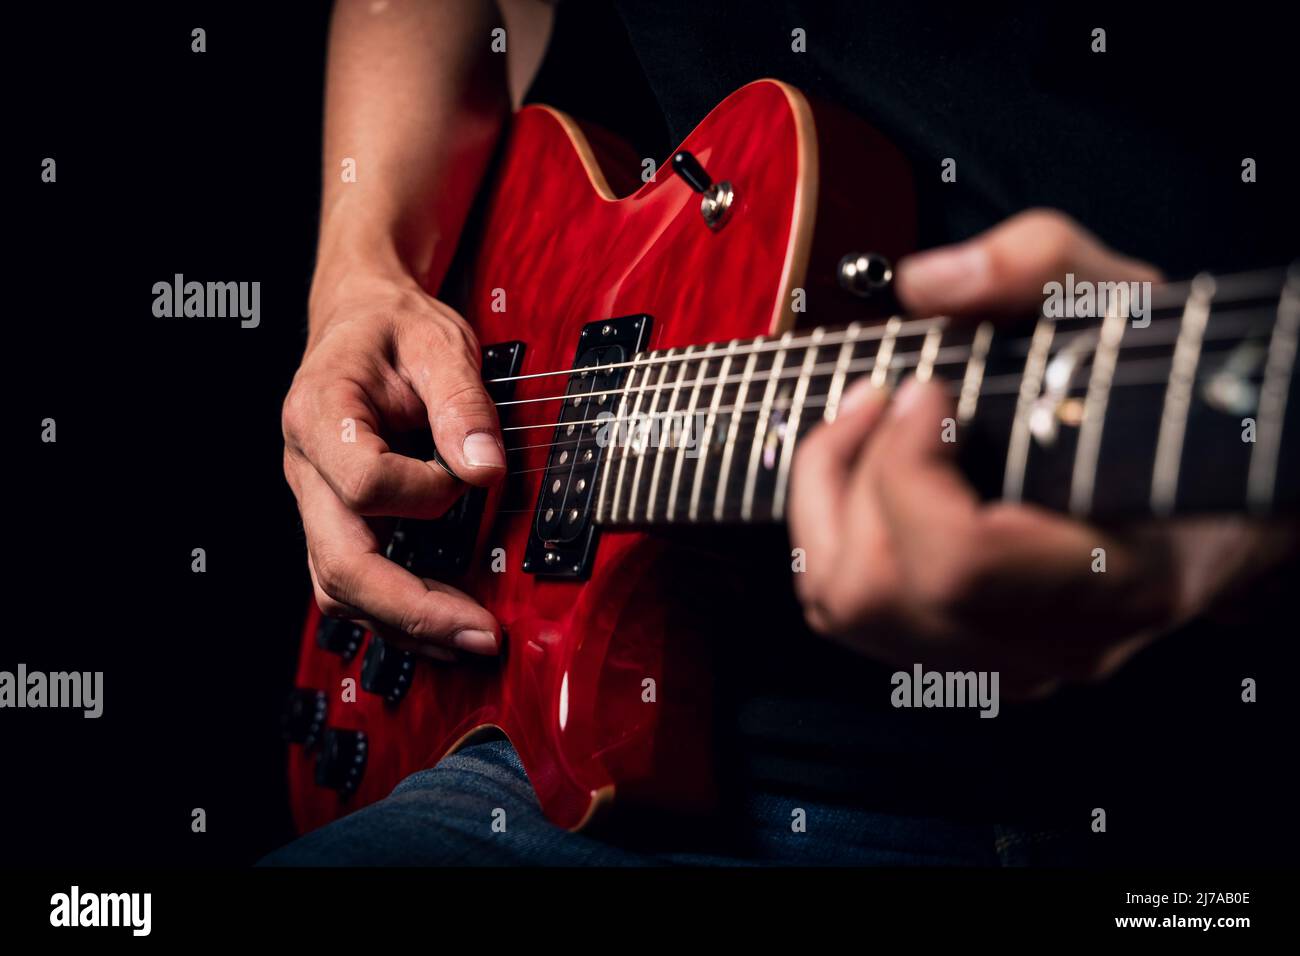 Nahaufnahme eines Mannes, der rote, glänzende E-Gitarre spielt Stockfoto